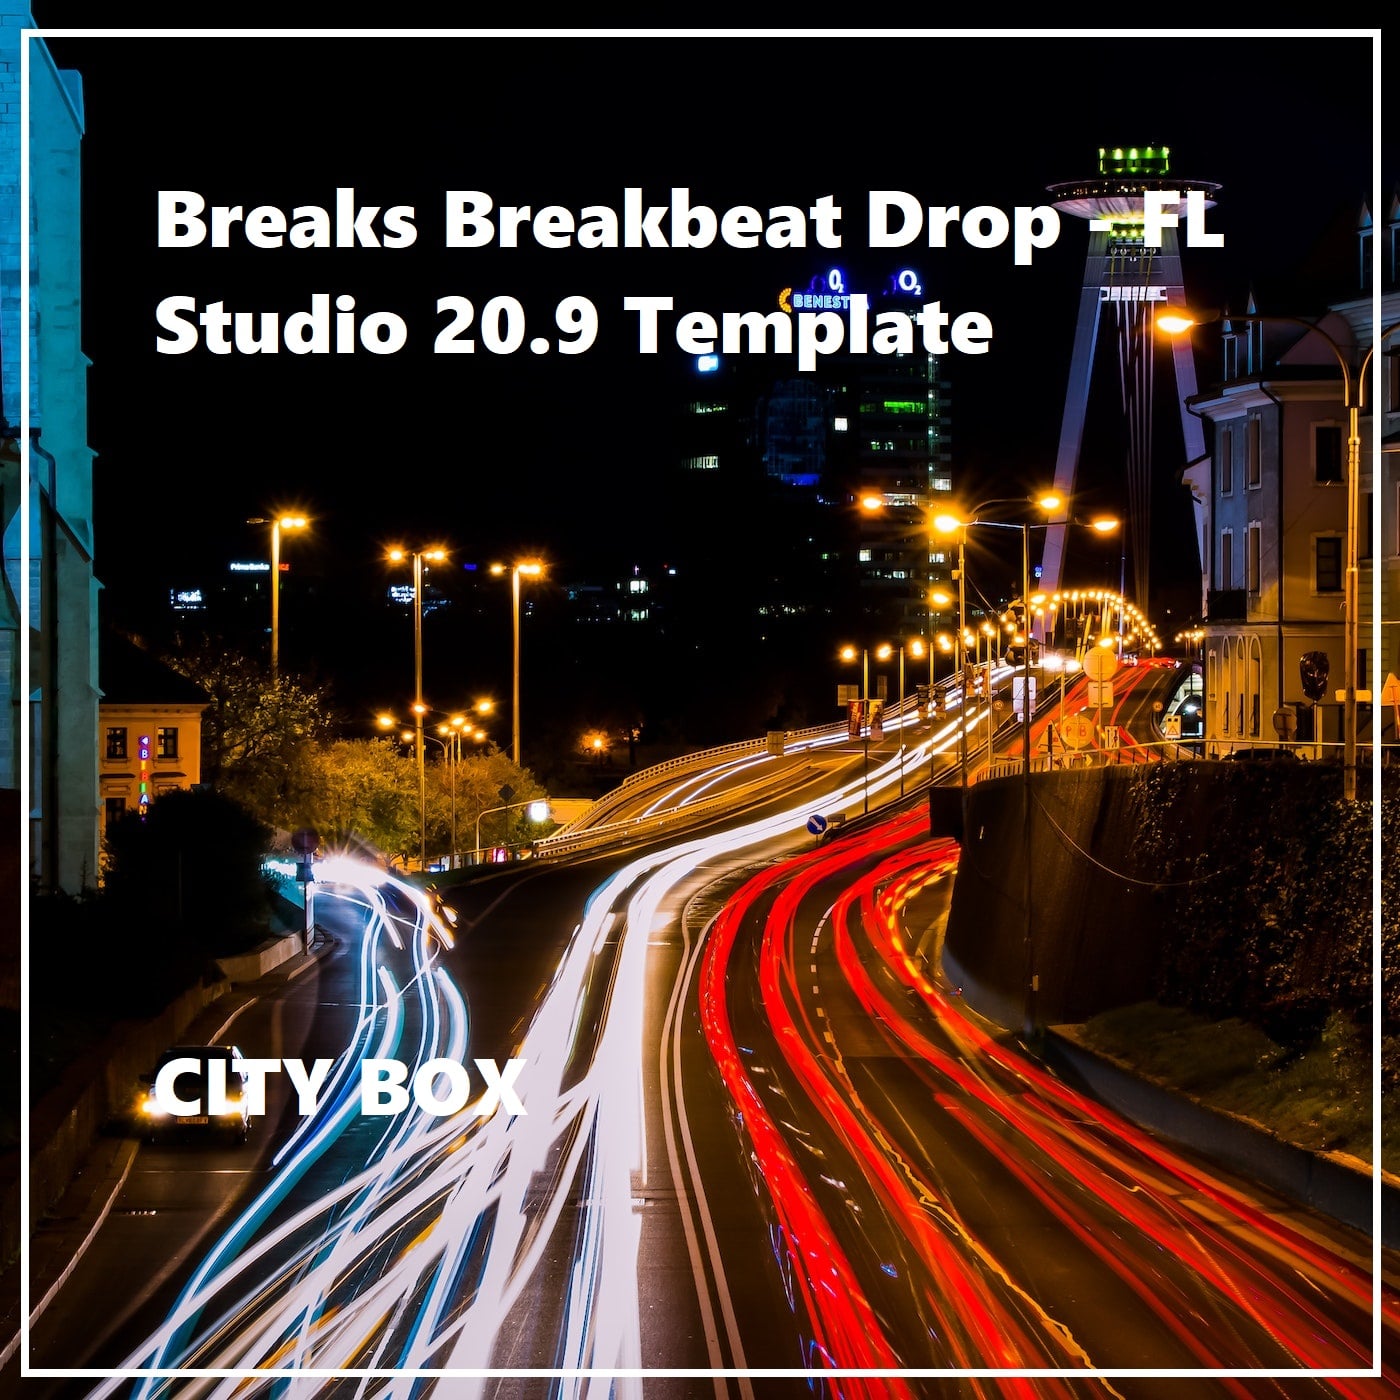 Breaks Breakbeat Drop - FL Studio 20.9 Template